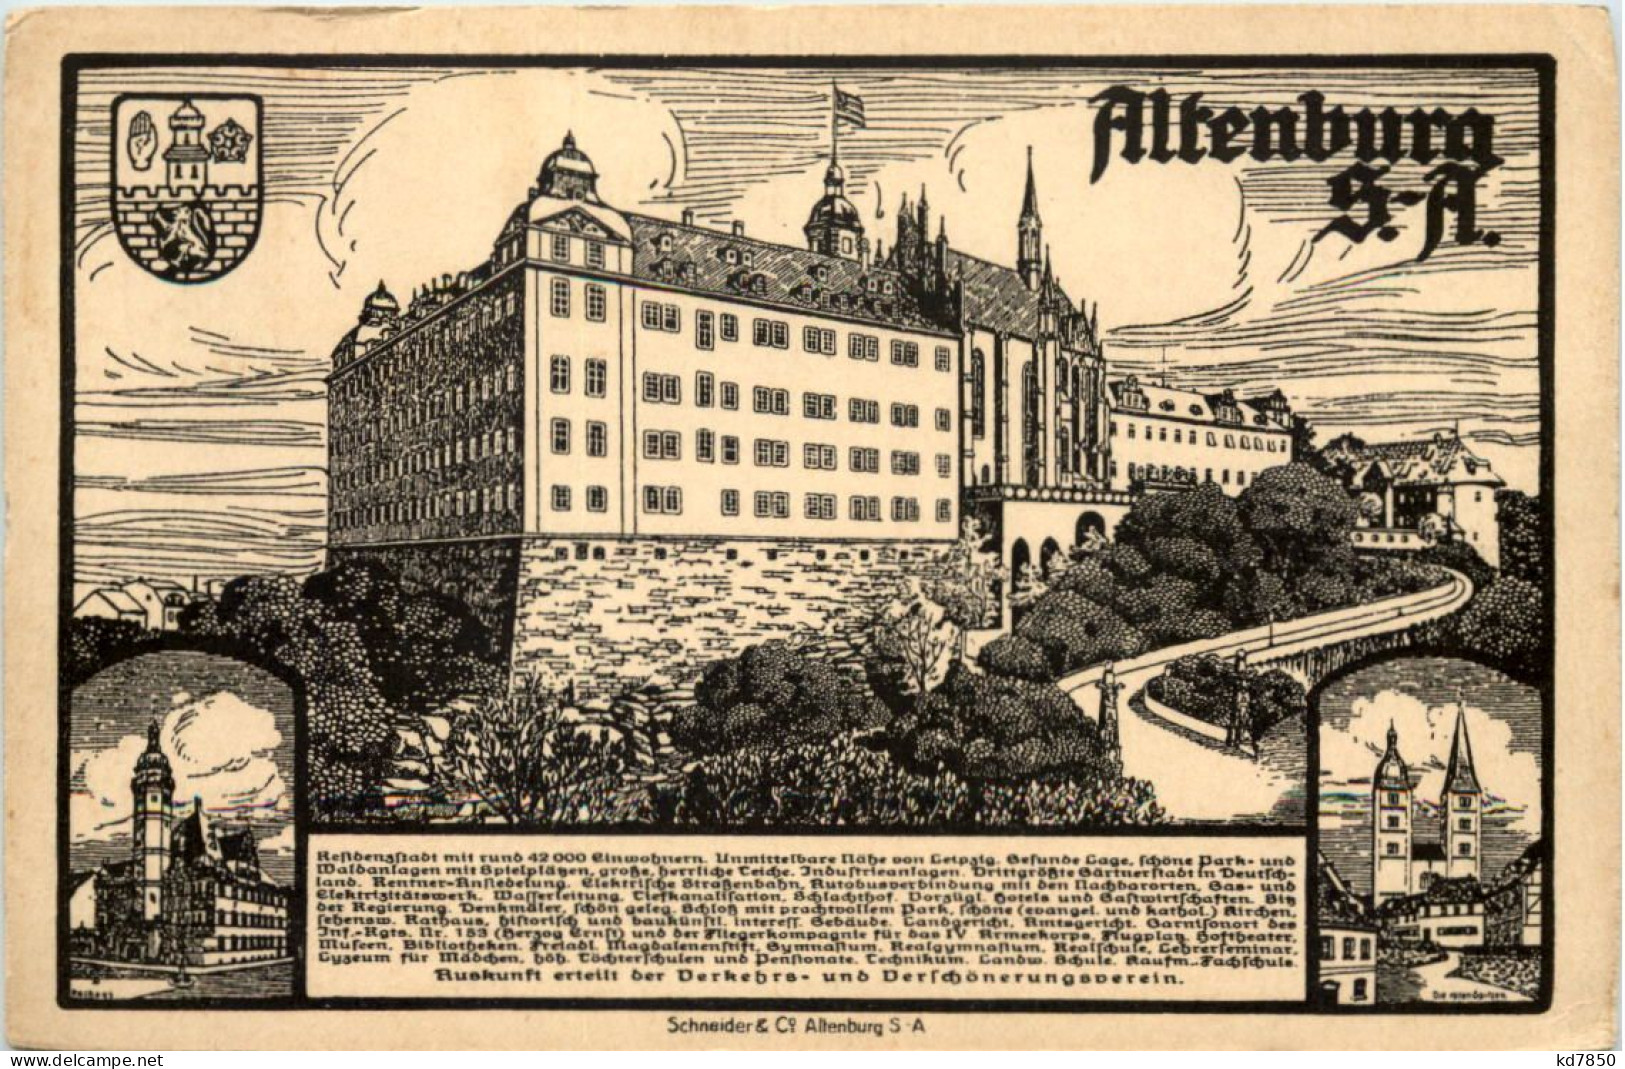 Altenburg - Altenburg